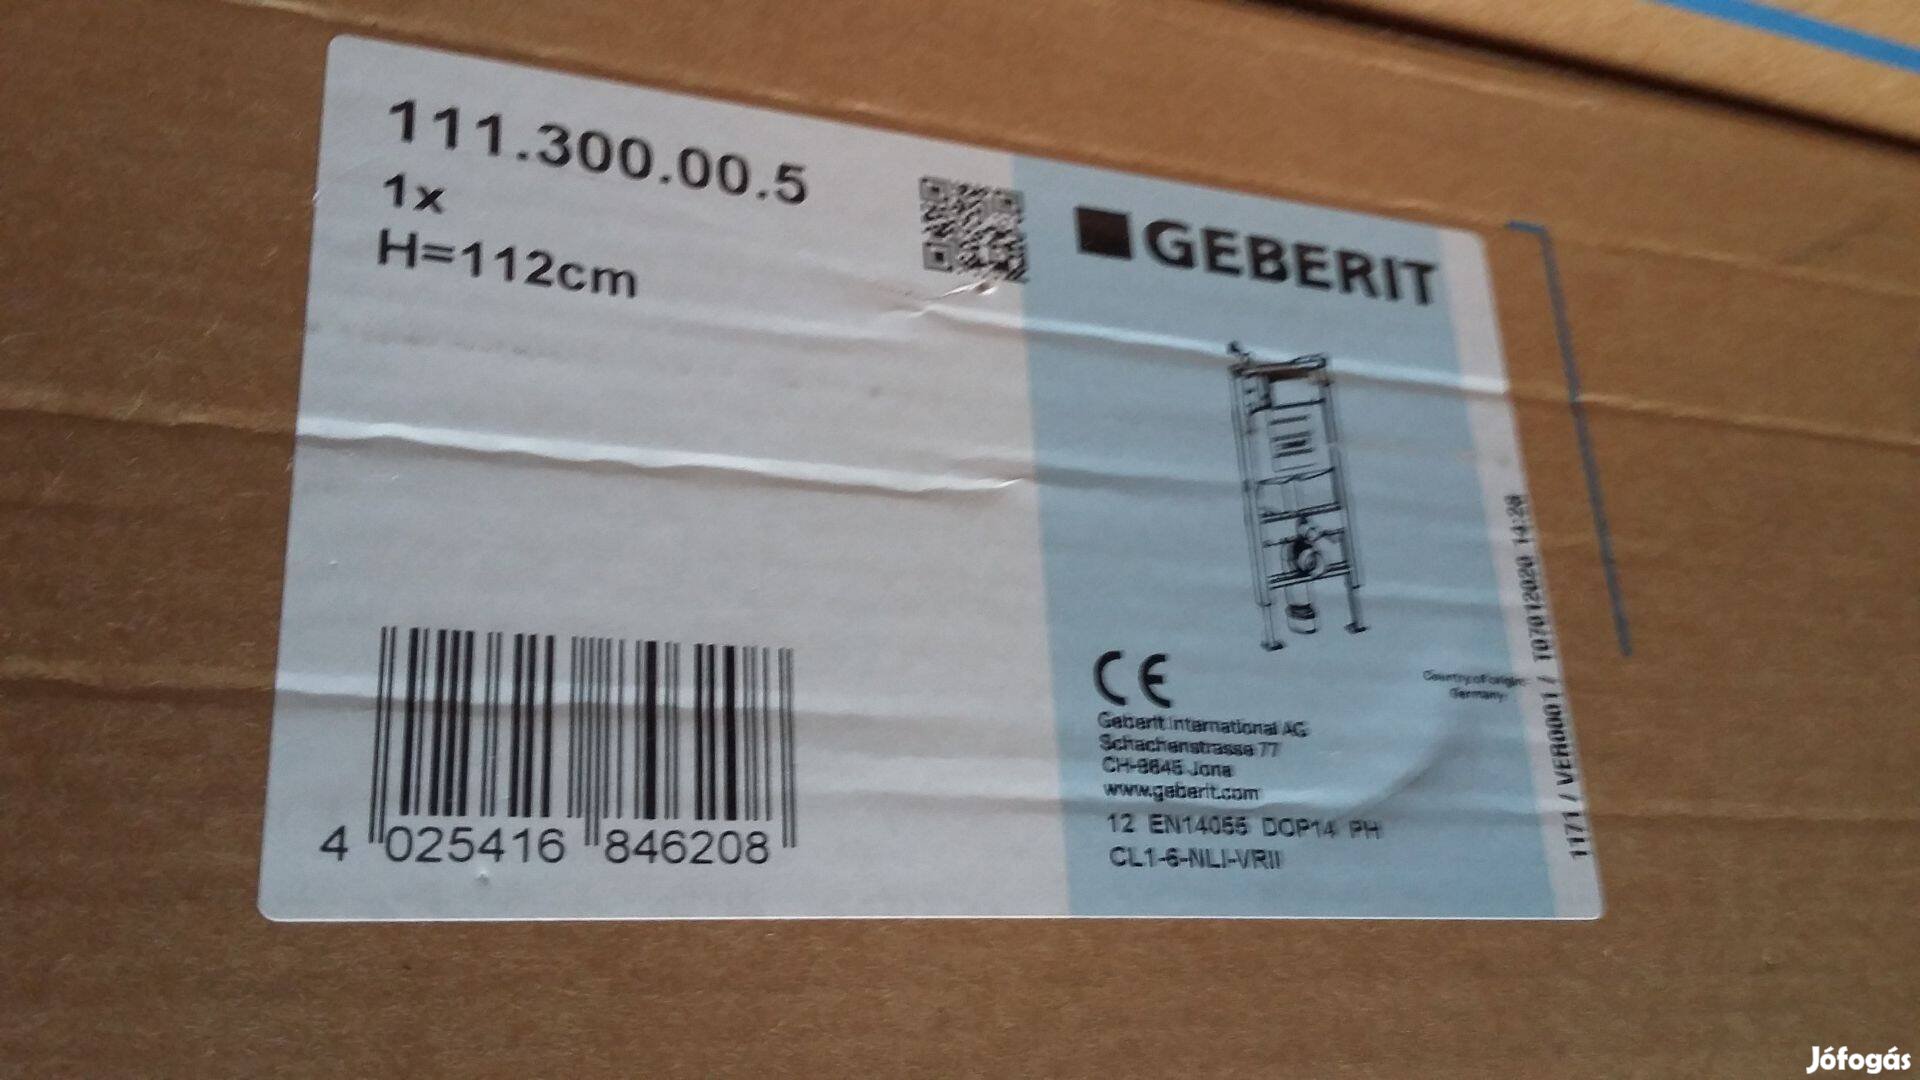 Geberit 111.300.00.5 Duofix WC tartály UP320 öblítőtartállyal Eladó!